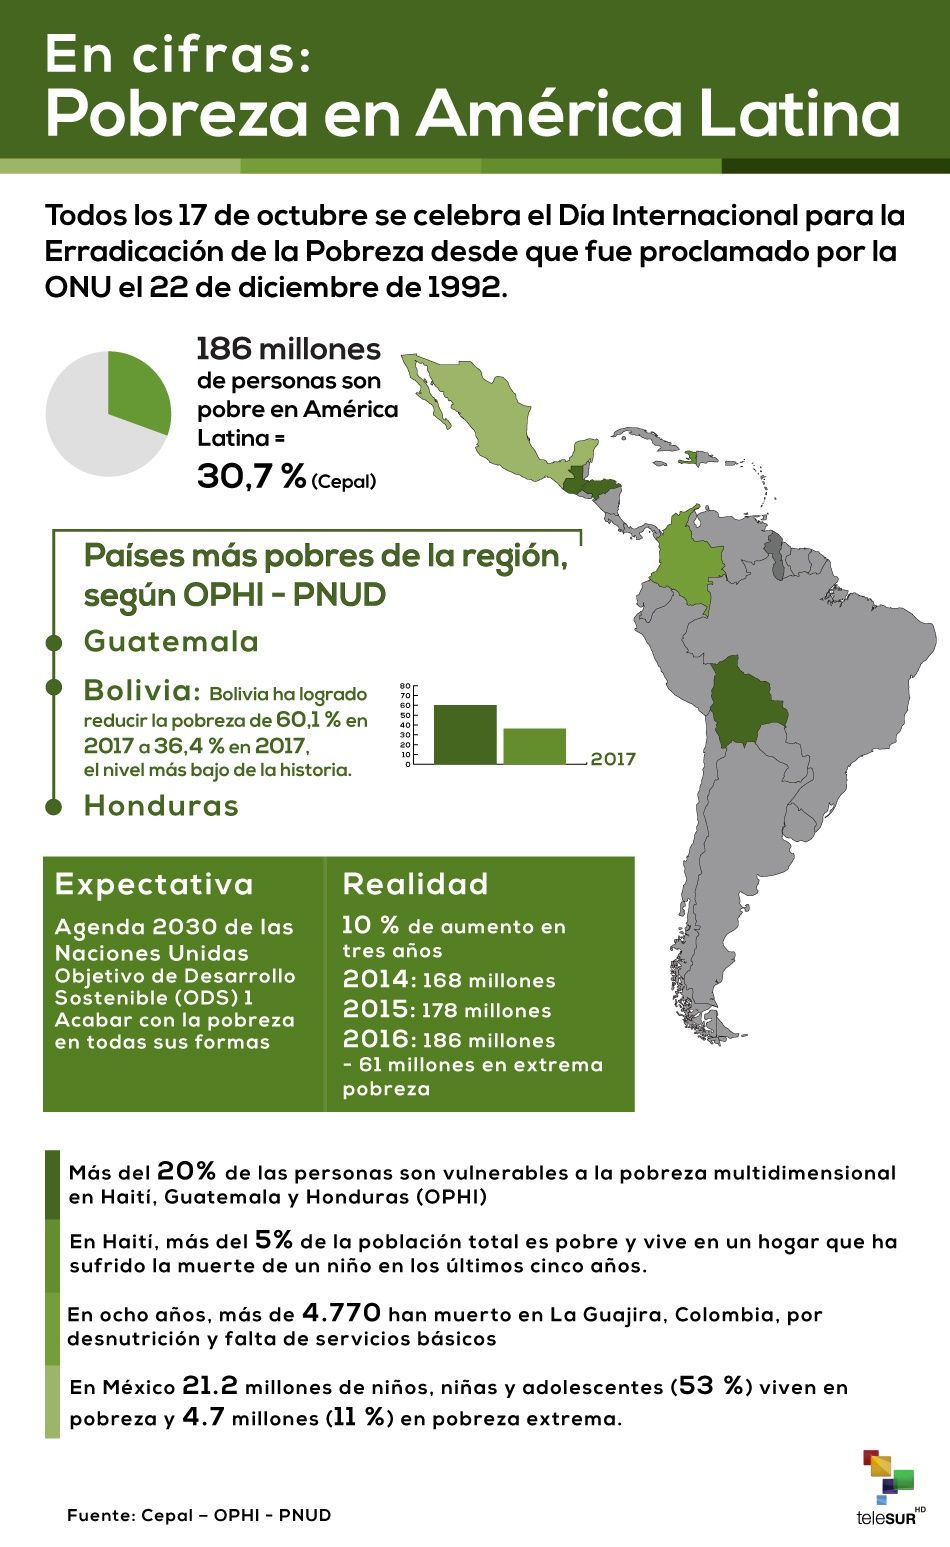 En cifras: La pobreza en América Latina y el Caribe 